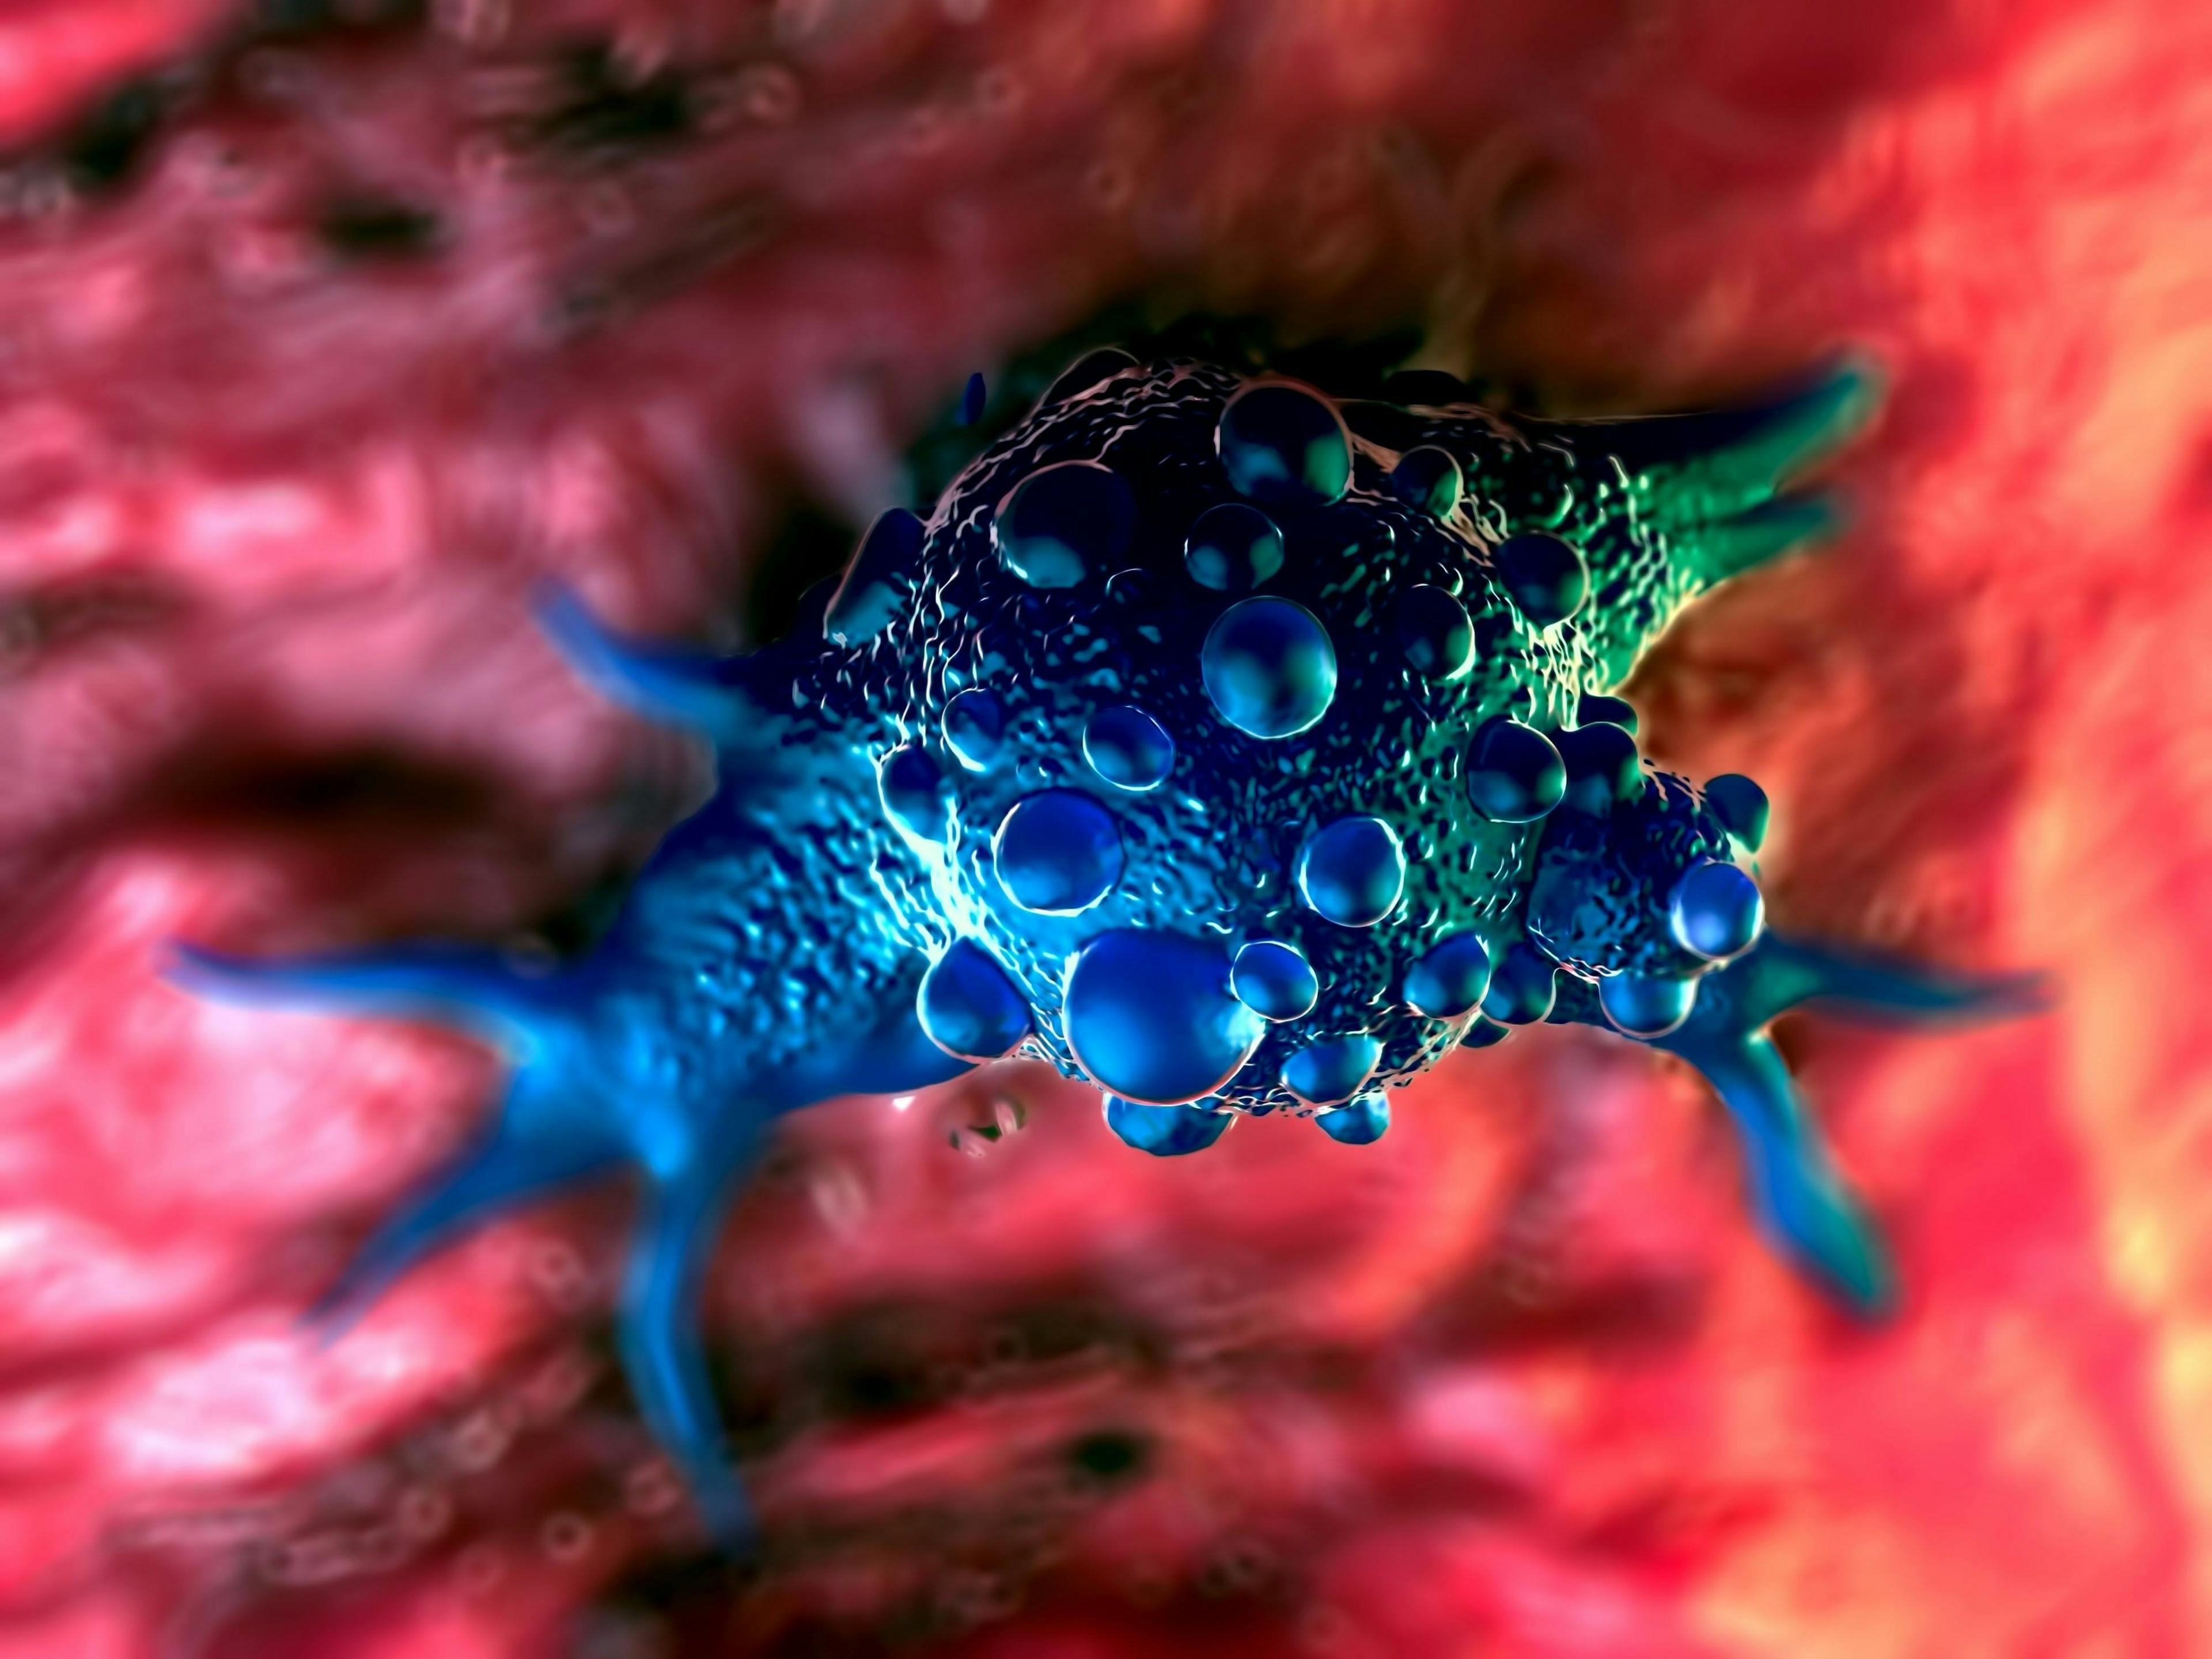 3d illustration - Bladder cancer cells | Image Credit: © PRB ARTS - stock.adobe.com